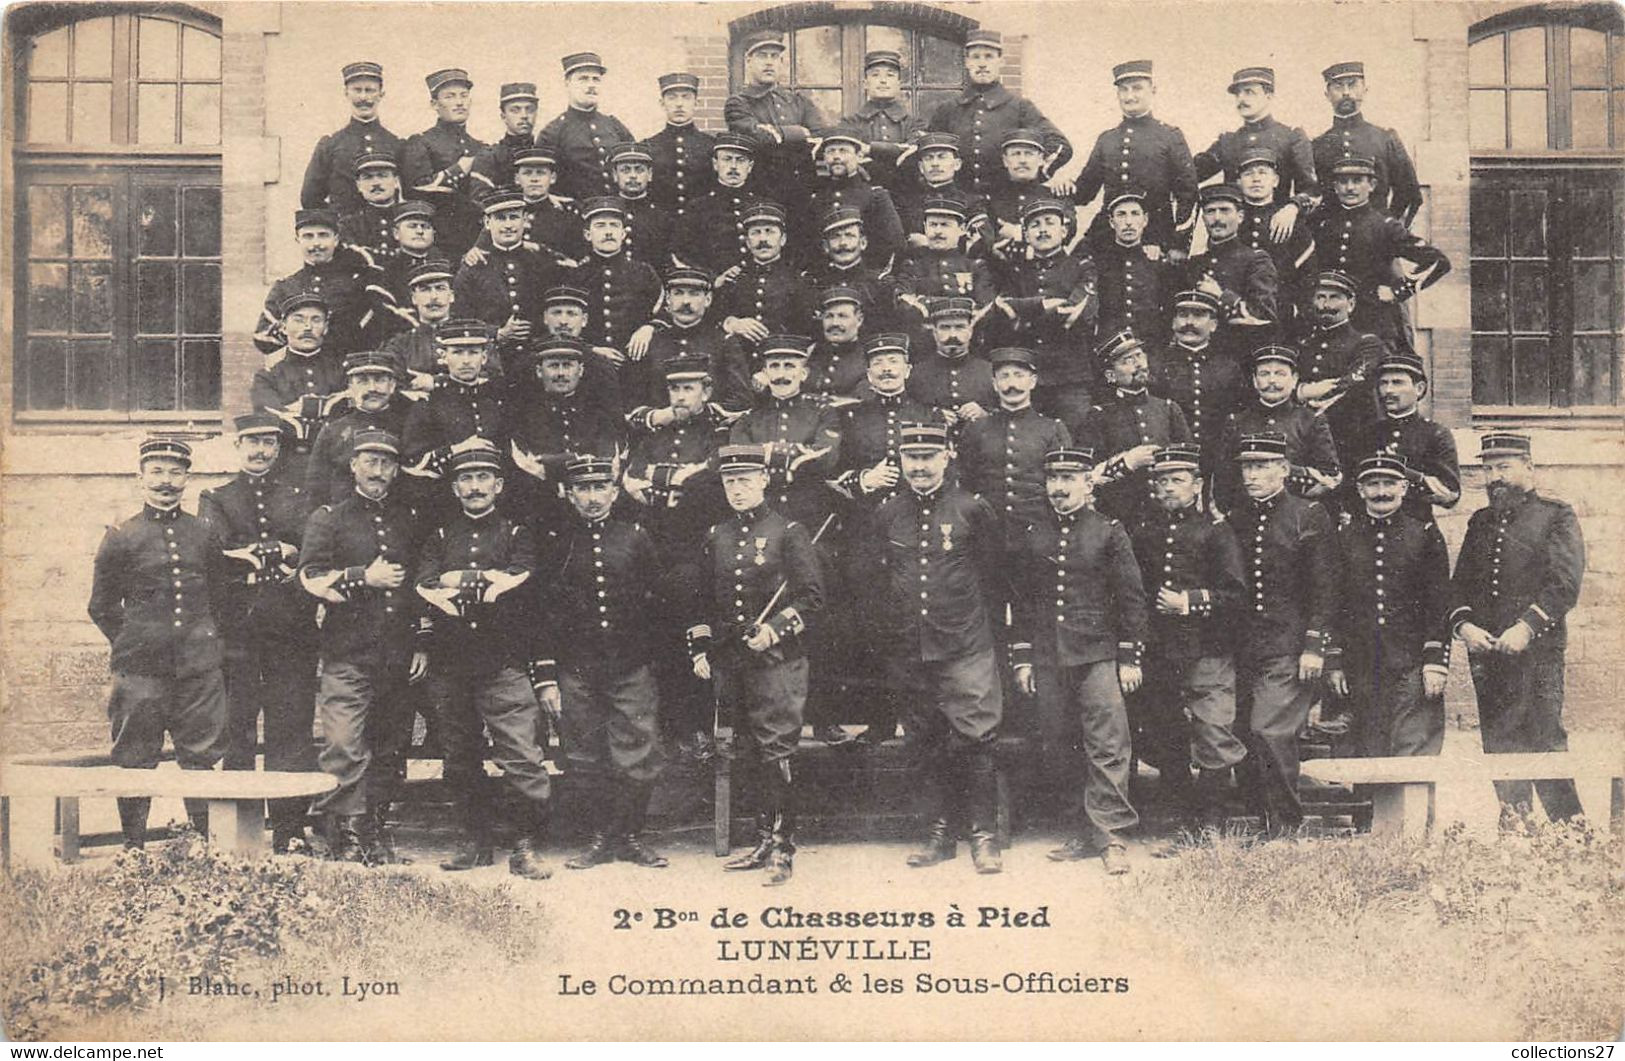 54-LUNEVILLE- 2eme BON DE CHASSEURS A PIED - LE COMMANDANT ET LES SOUS-OFFICIERS - Luneville